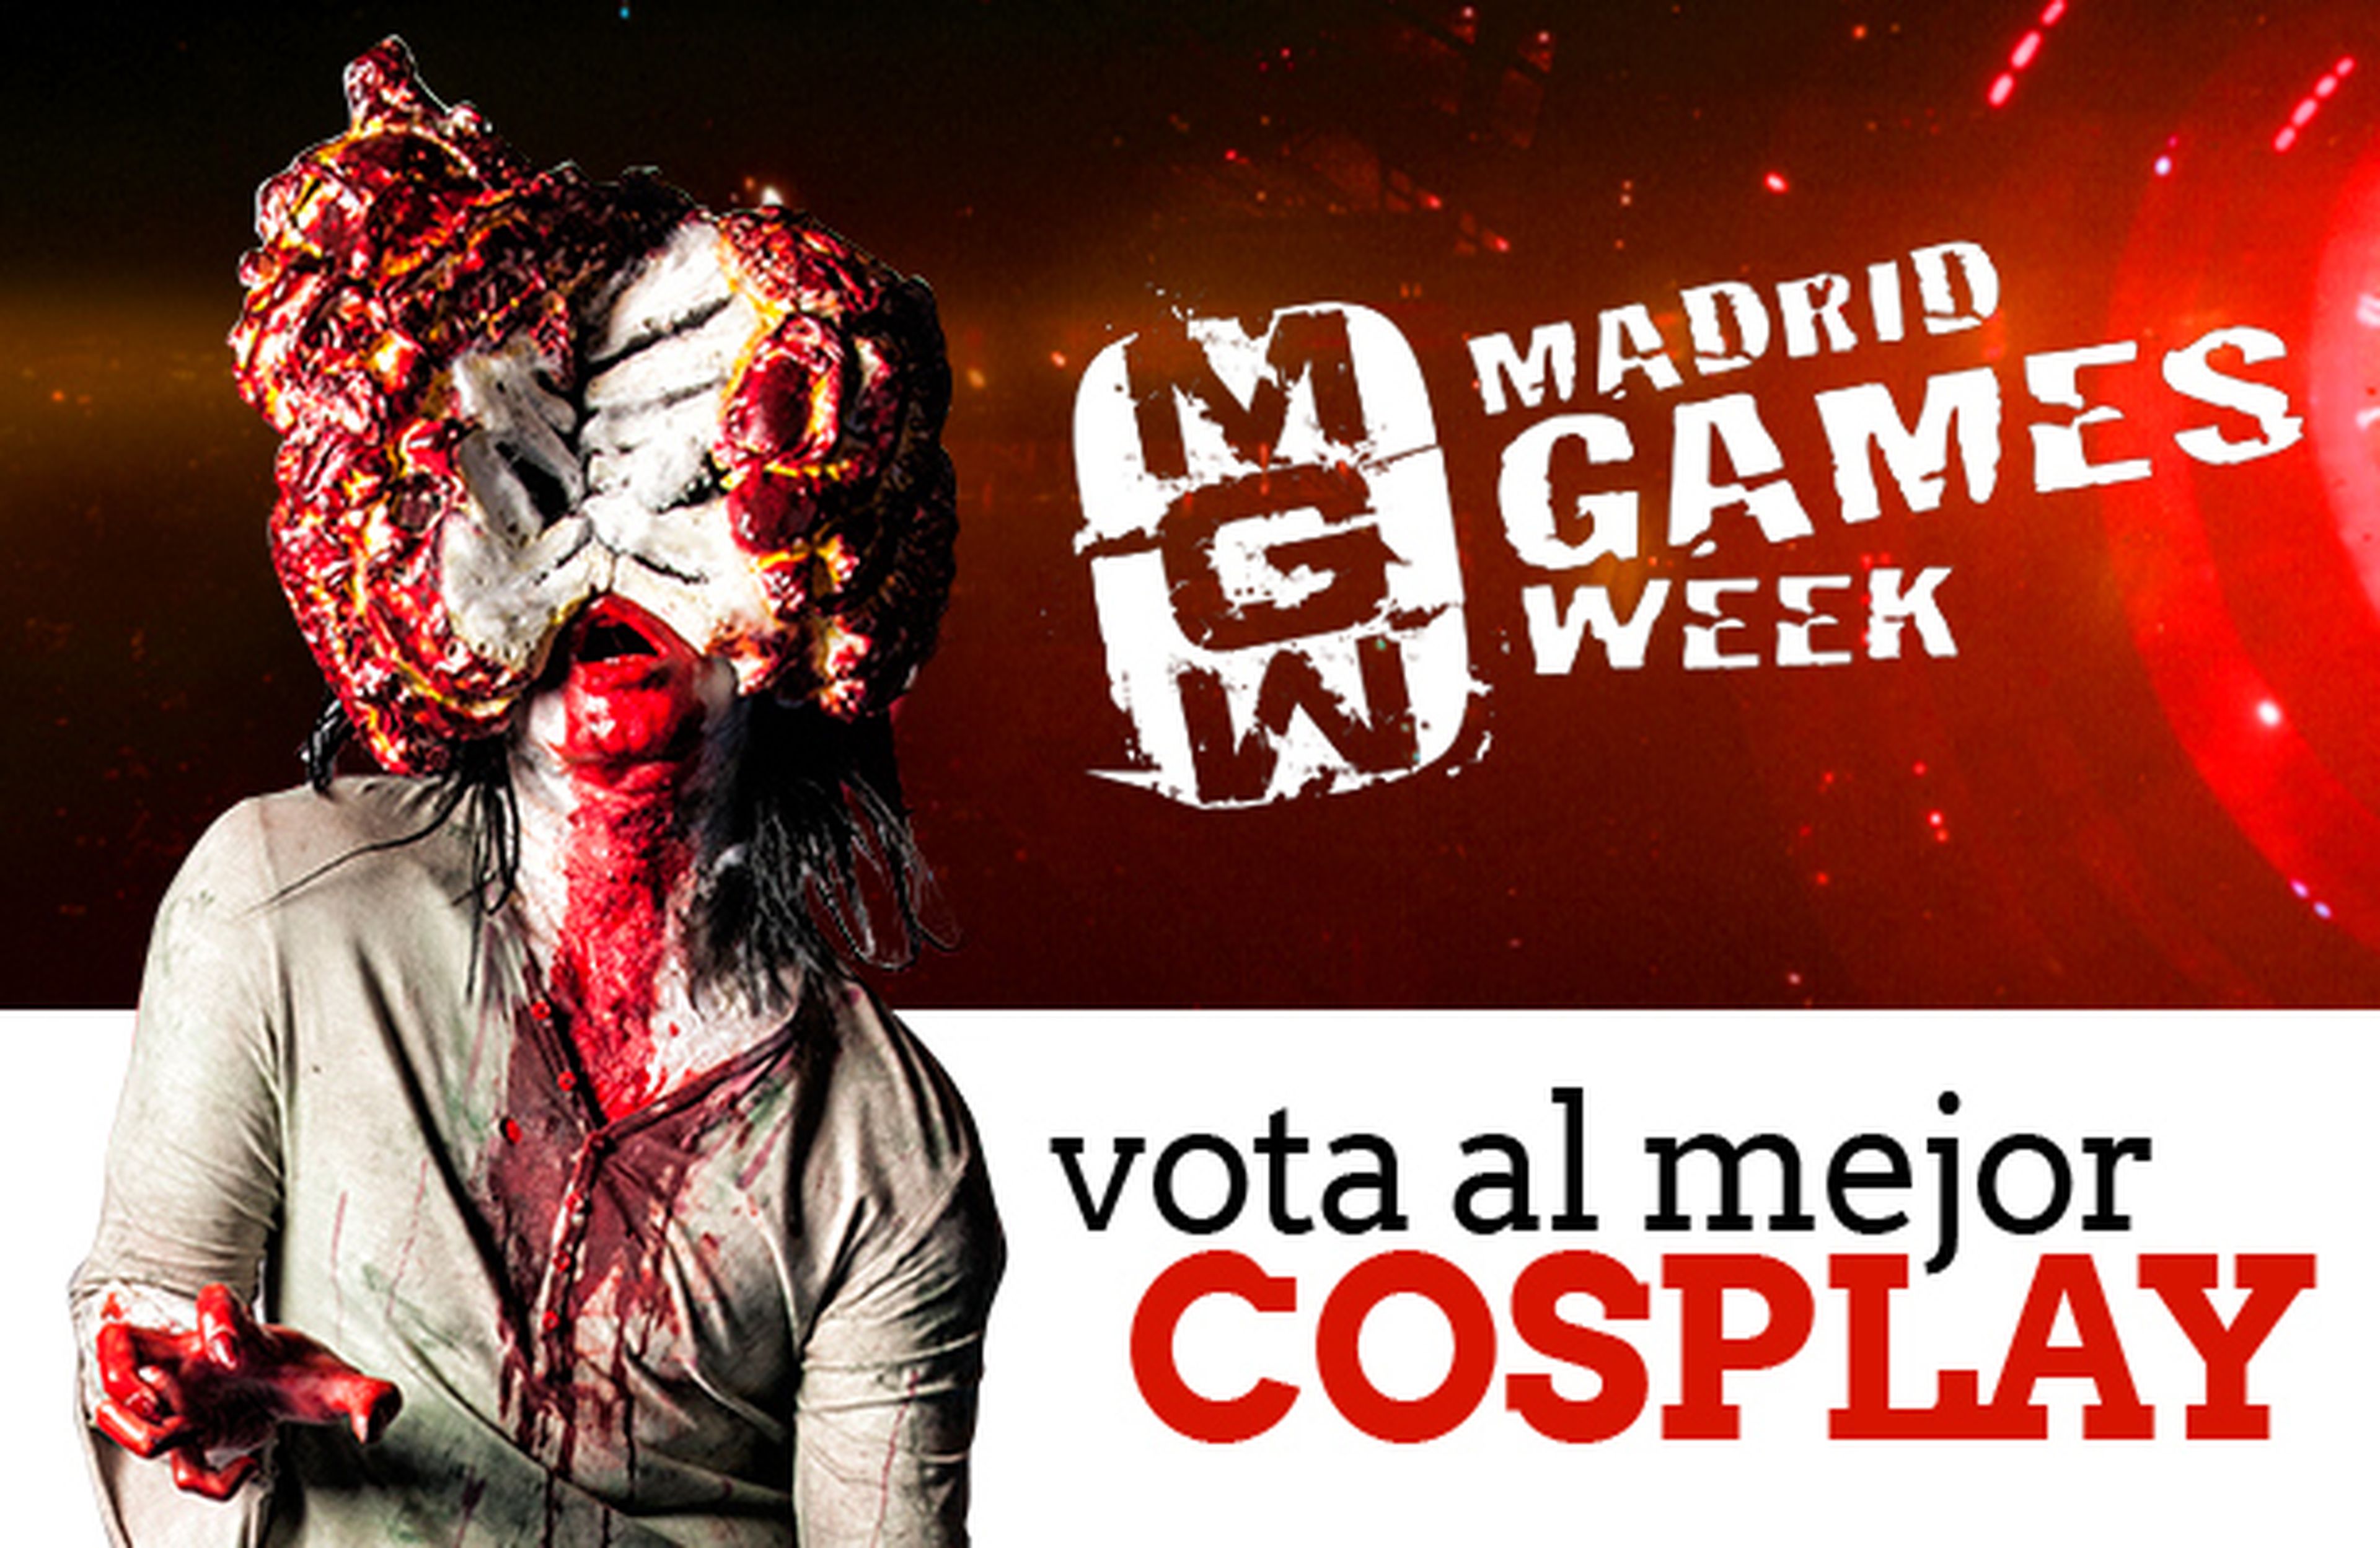 Concurso de cosplay Madrid Games Week: ¡Vota!